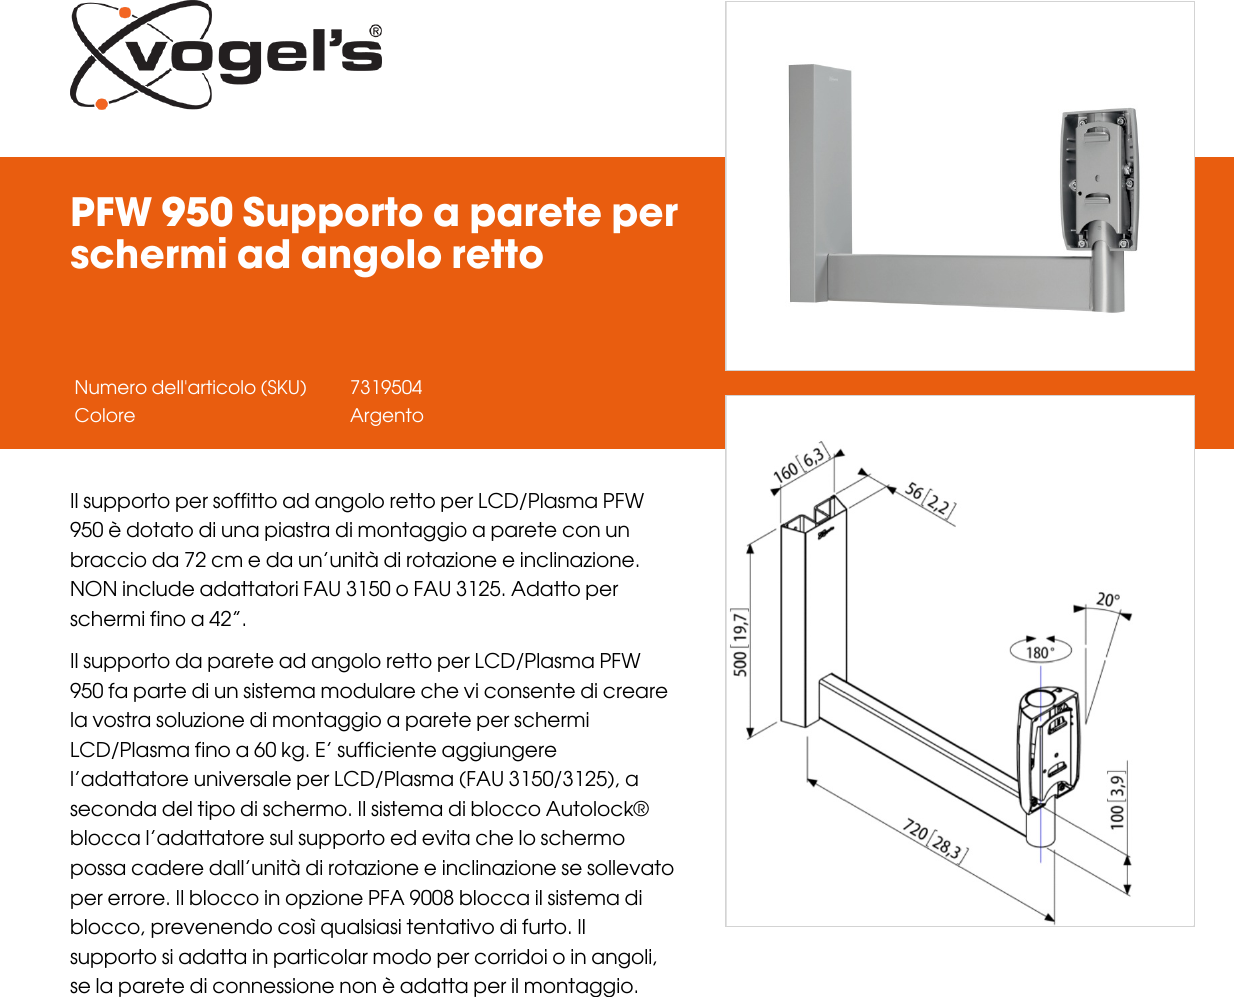 Page 1 of 2 - Leaflet Version 4.0  PFW-950-Supporto-a-parete-per-schermi-ad-angolo-retto--2510-it